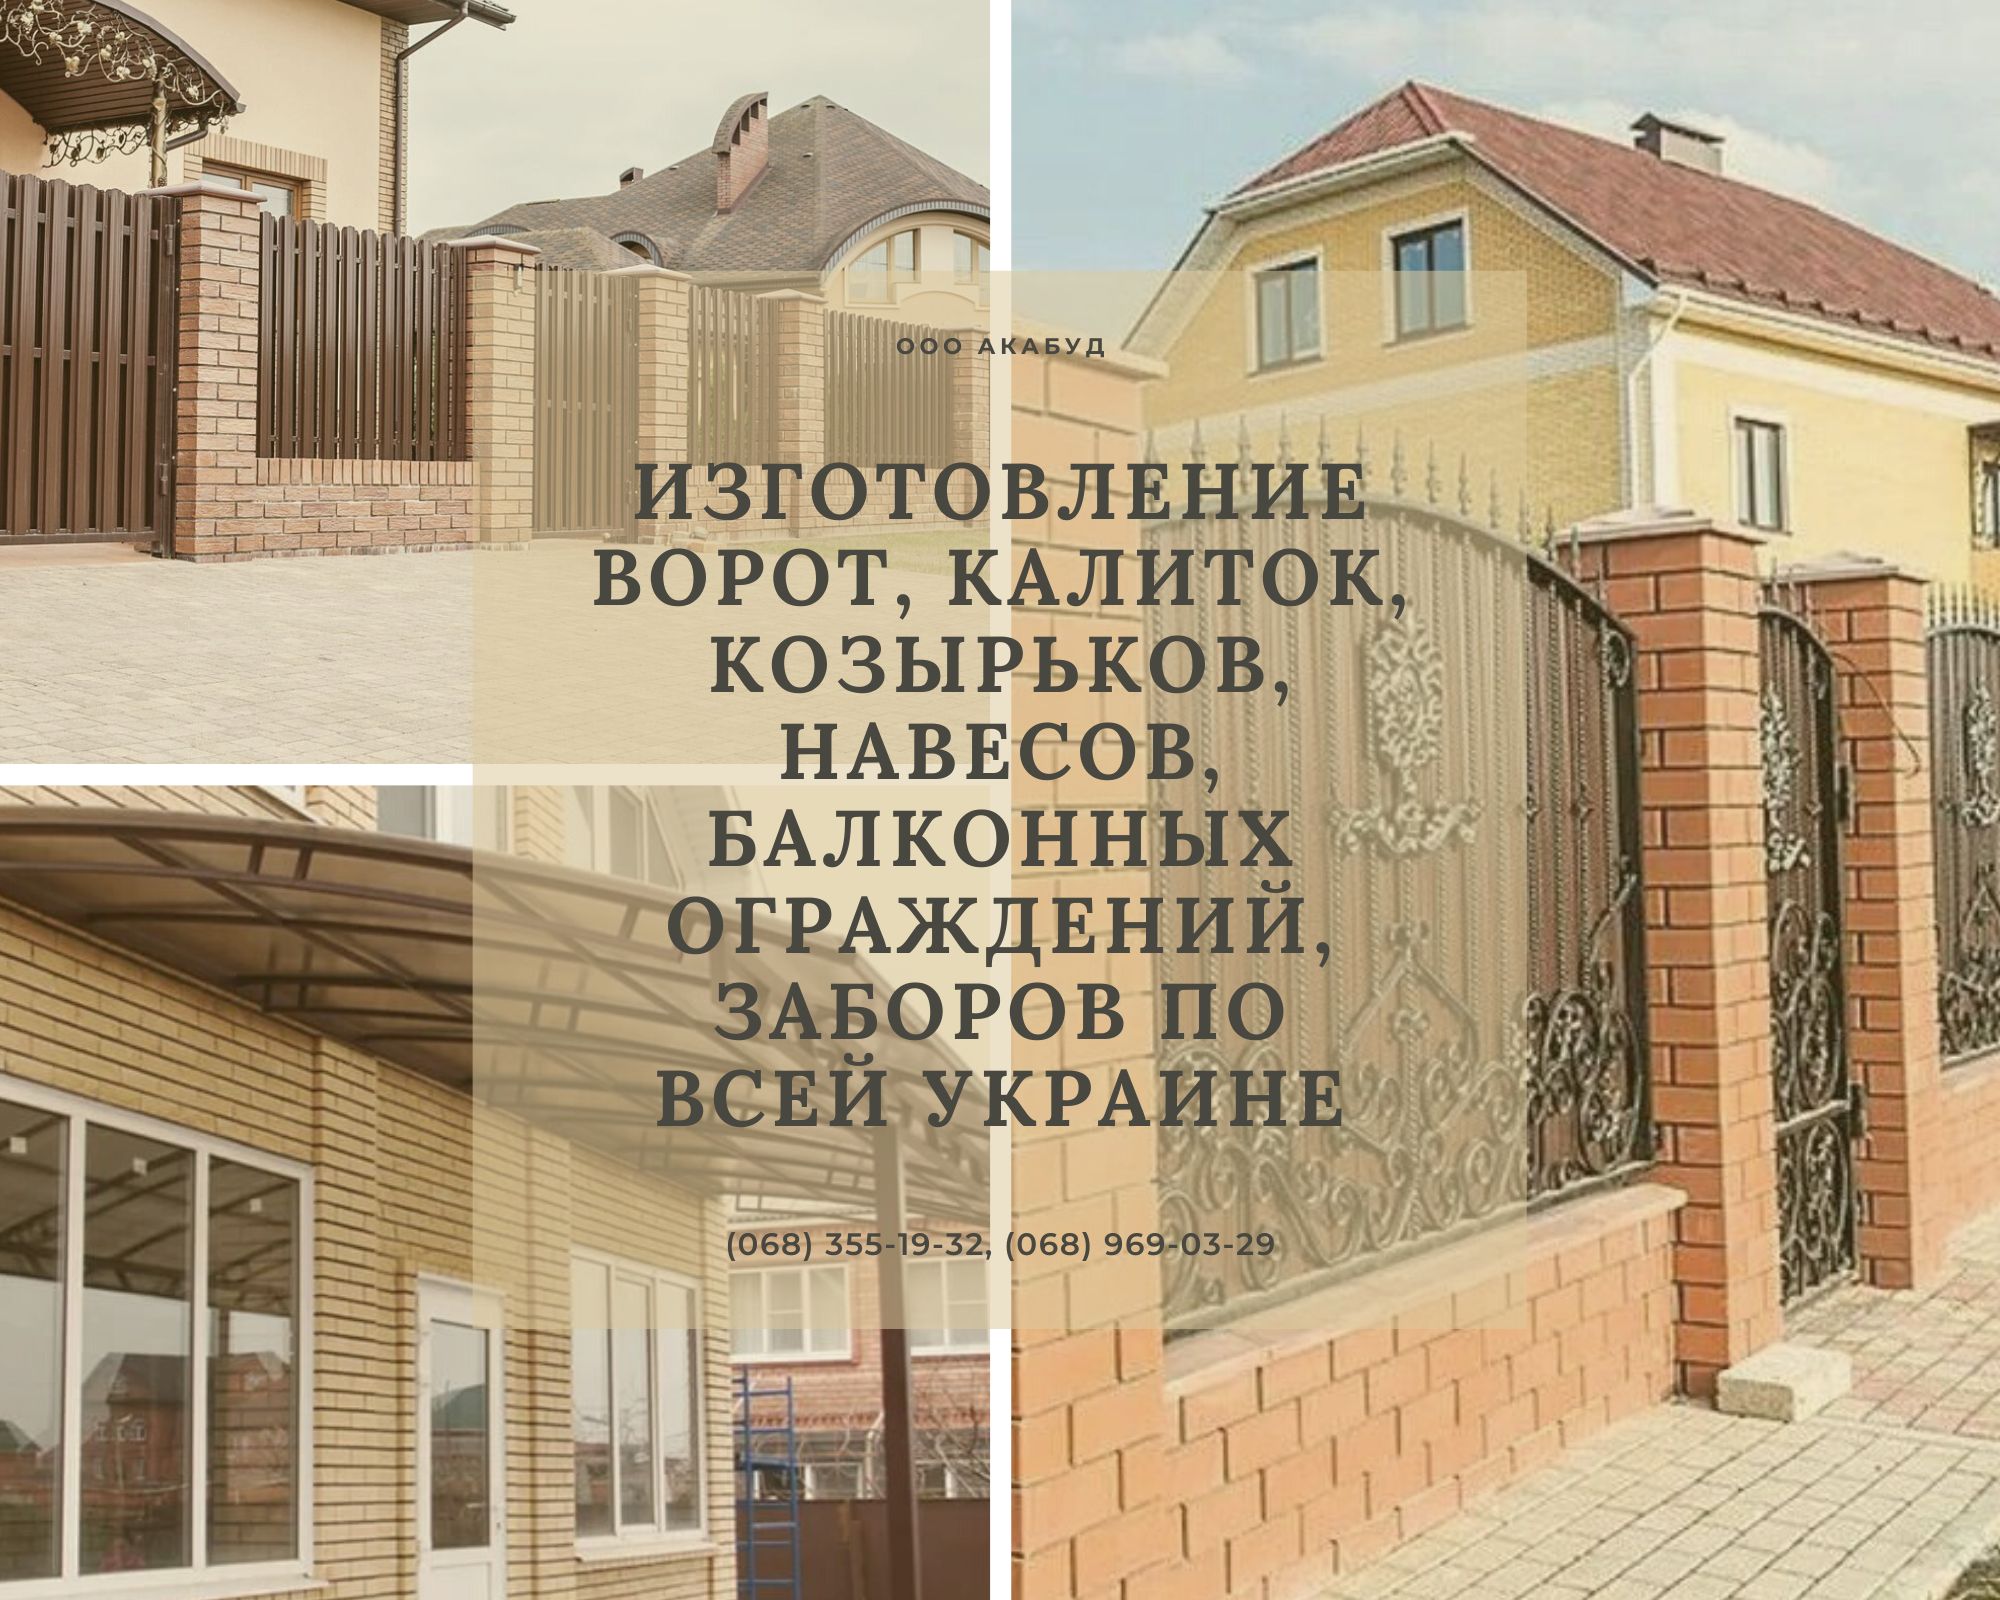 Изготовление ворот, калиток, козырьков, навесов, балконных ограждений, заборов по всей Украине  - фотография